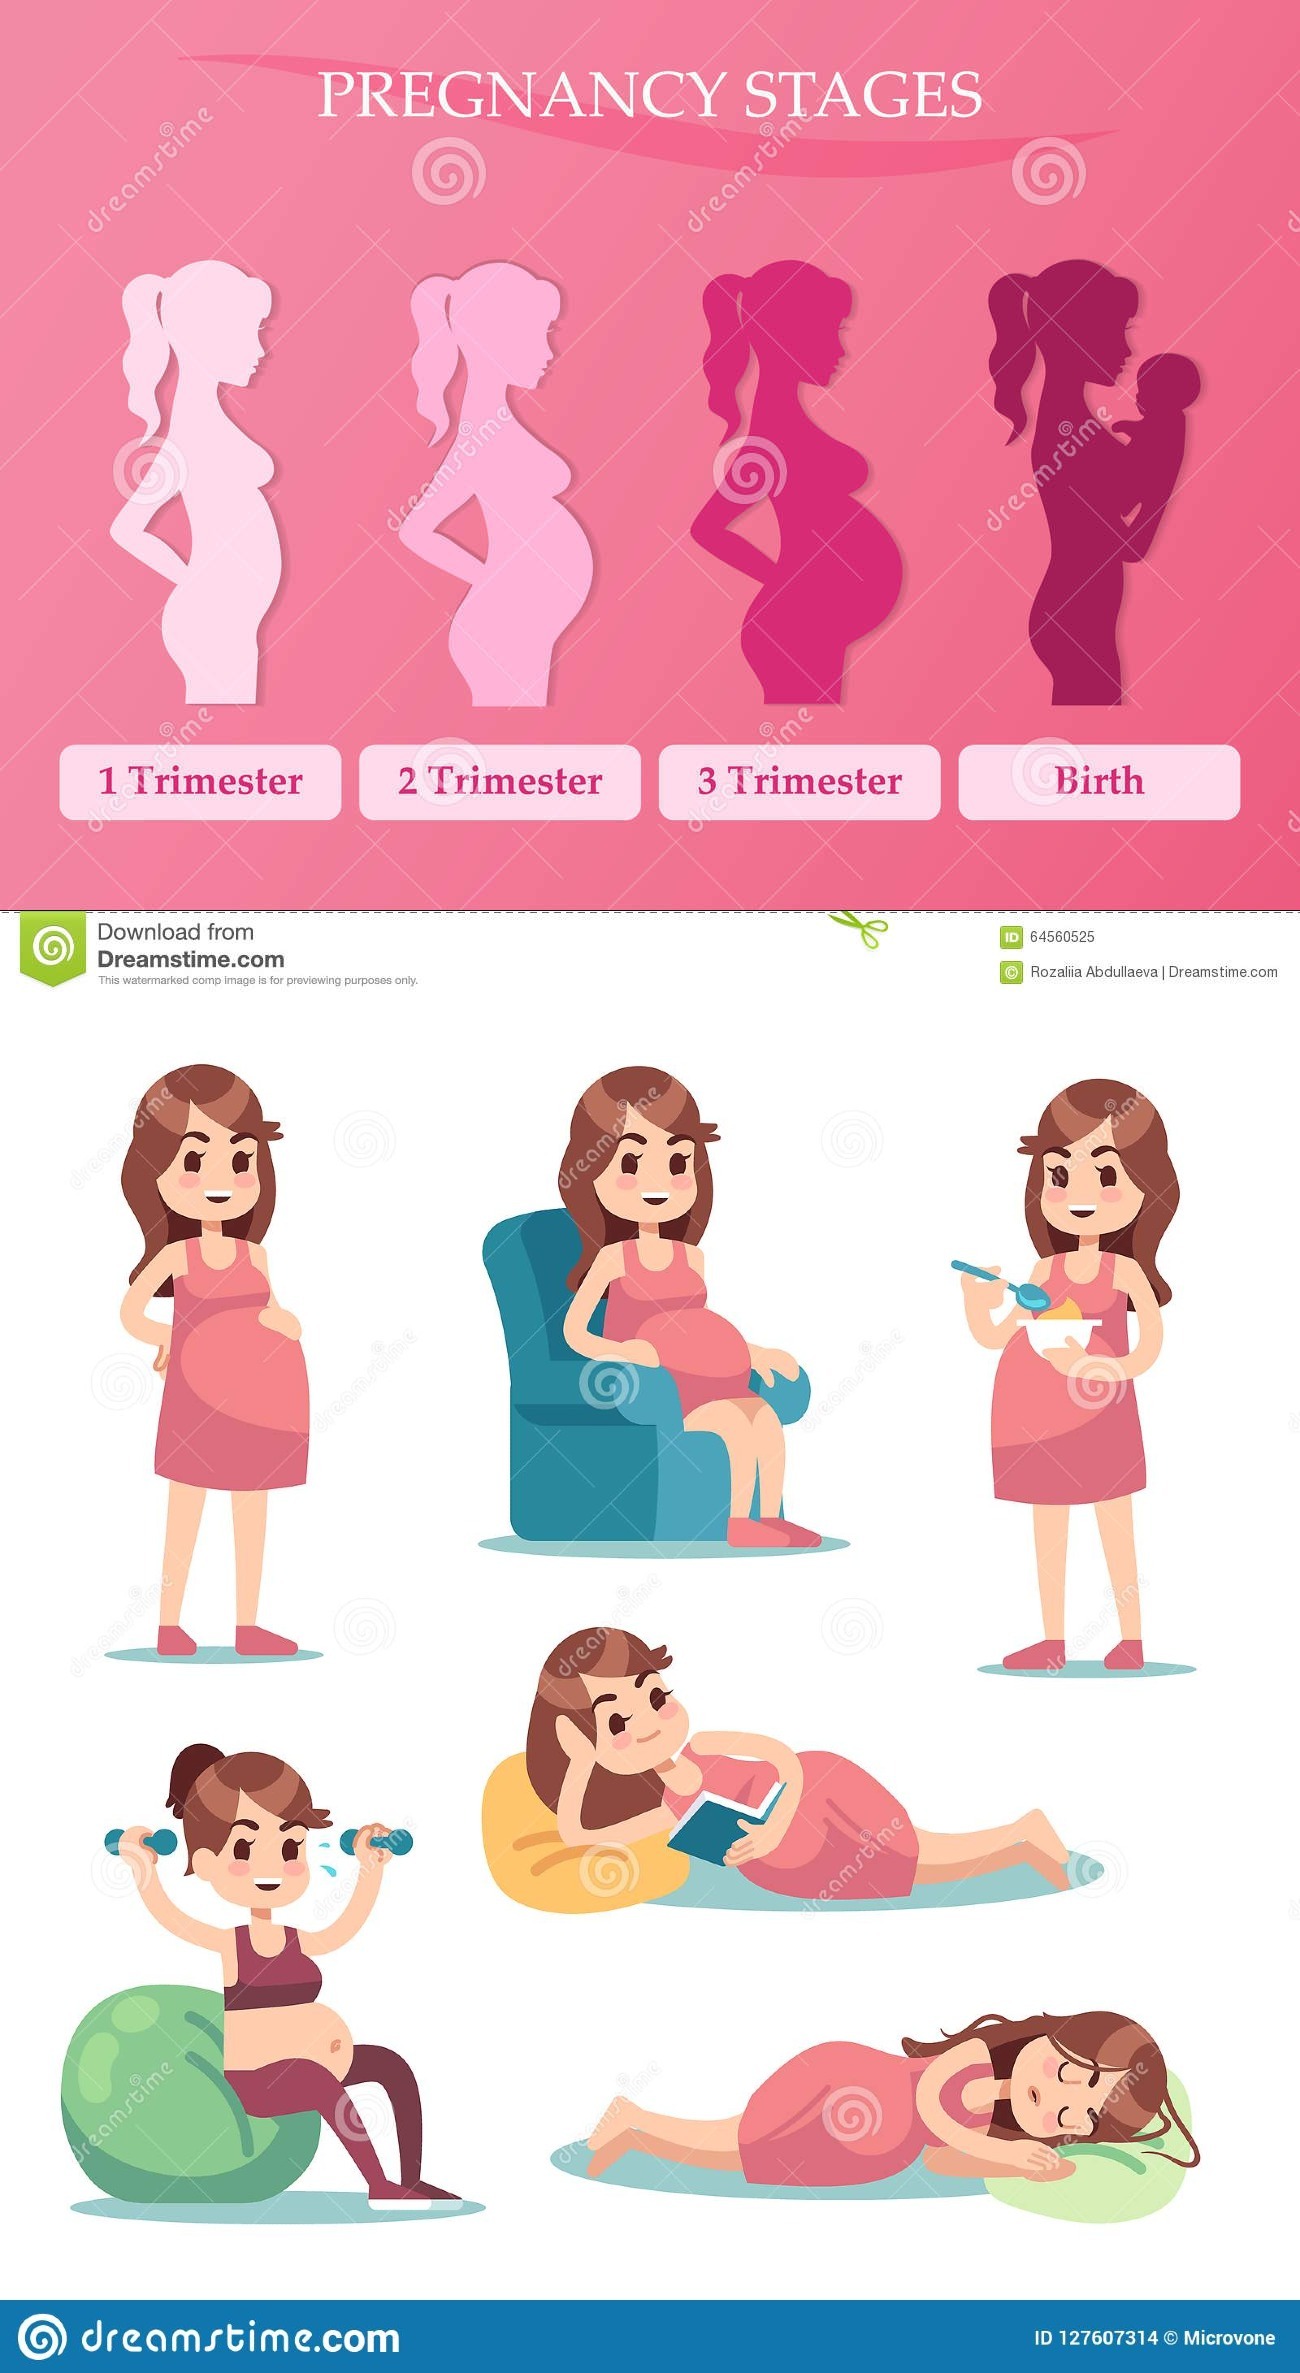 اعراض الحمل المبكرة